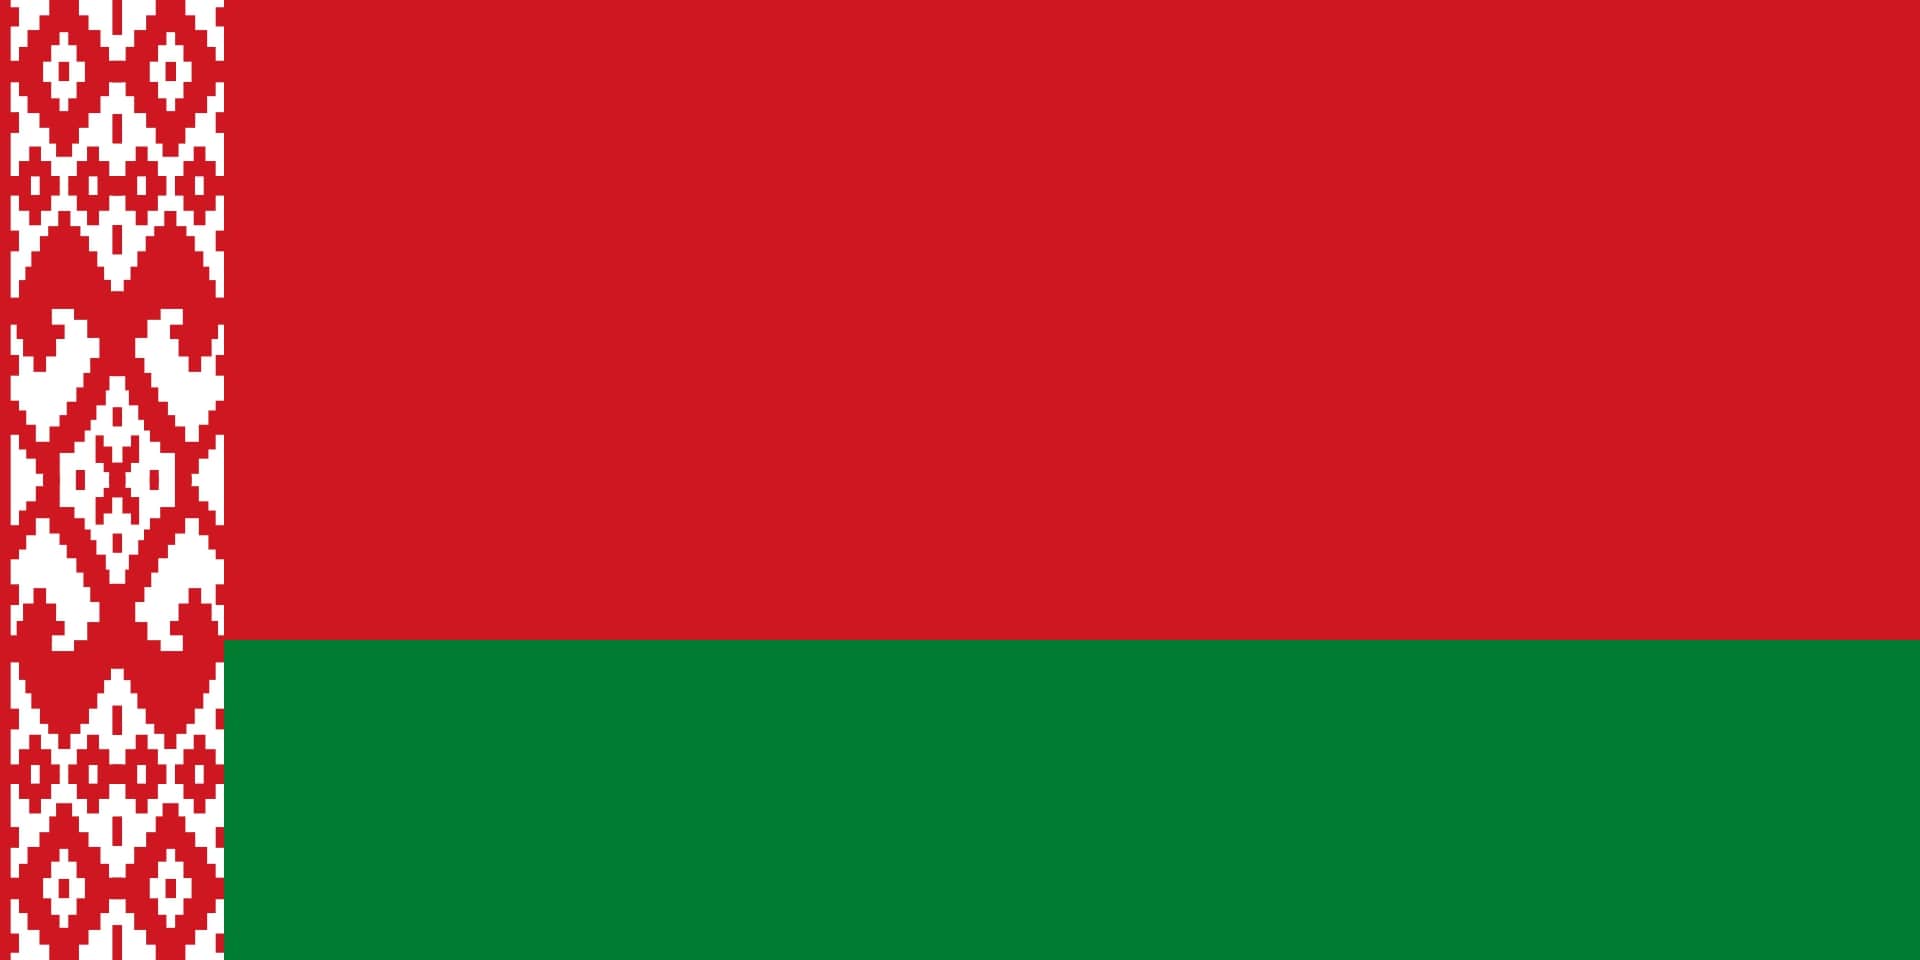 ベラルーシ国旗の色の意味とは？